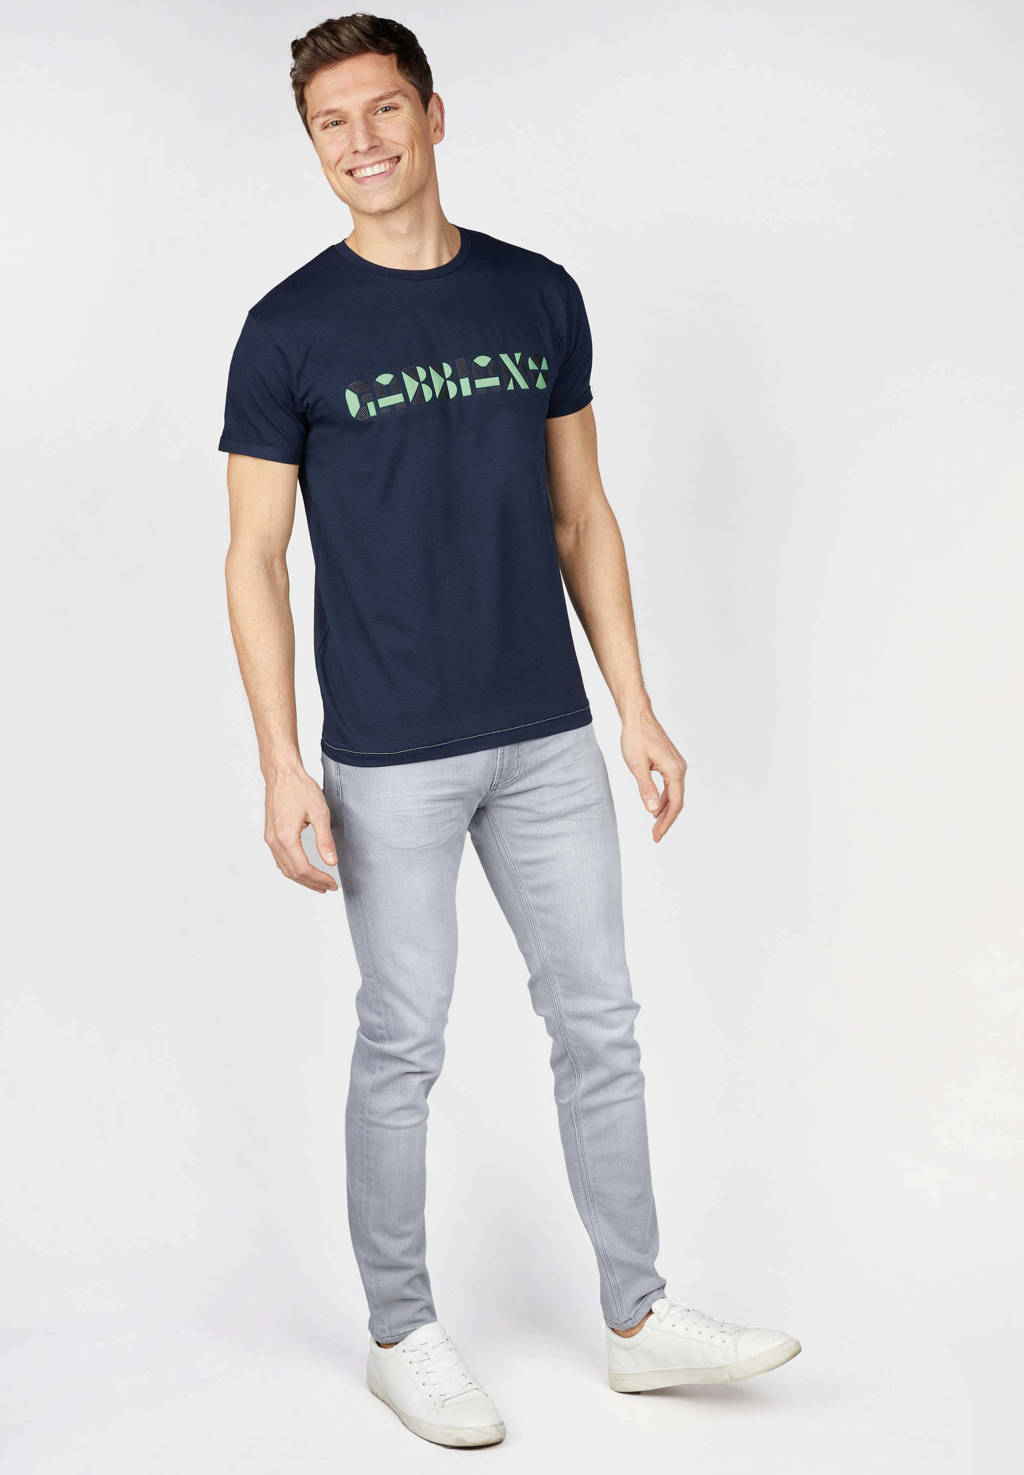 GABBIANO T-shirt met printopdruk donkerblauw/groen